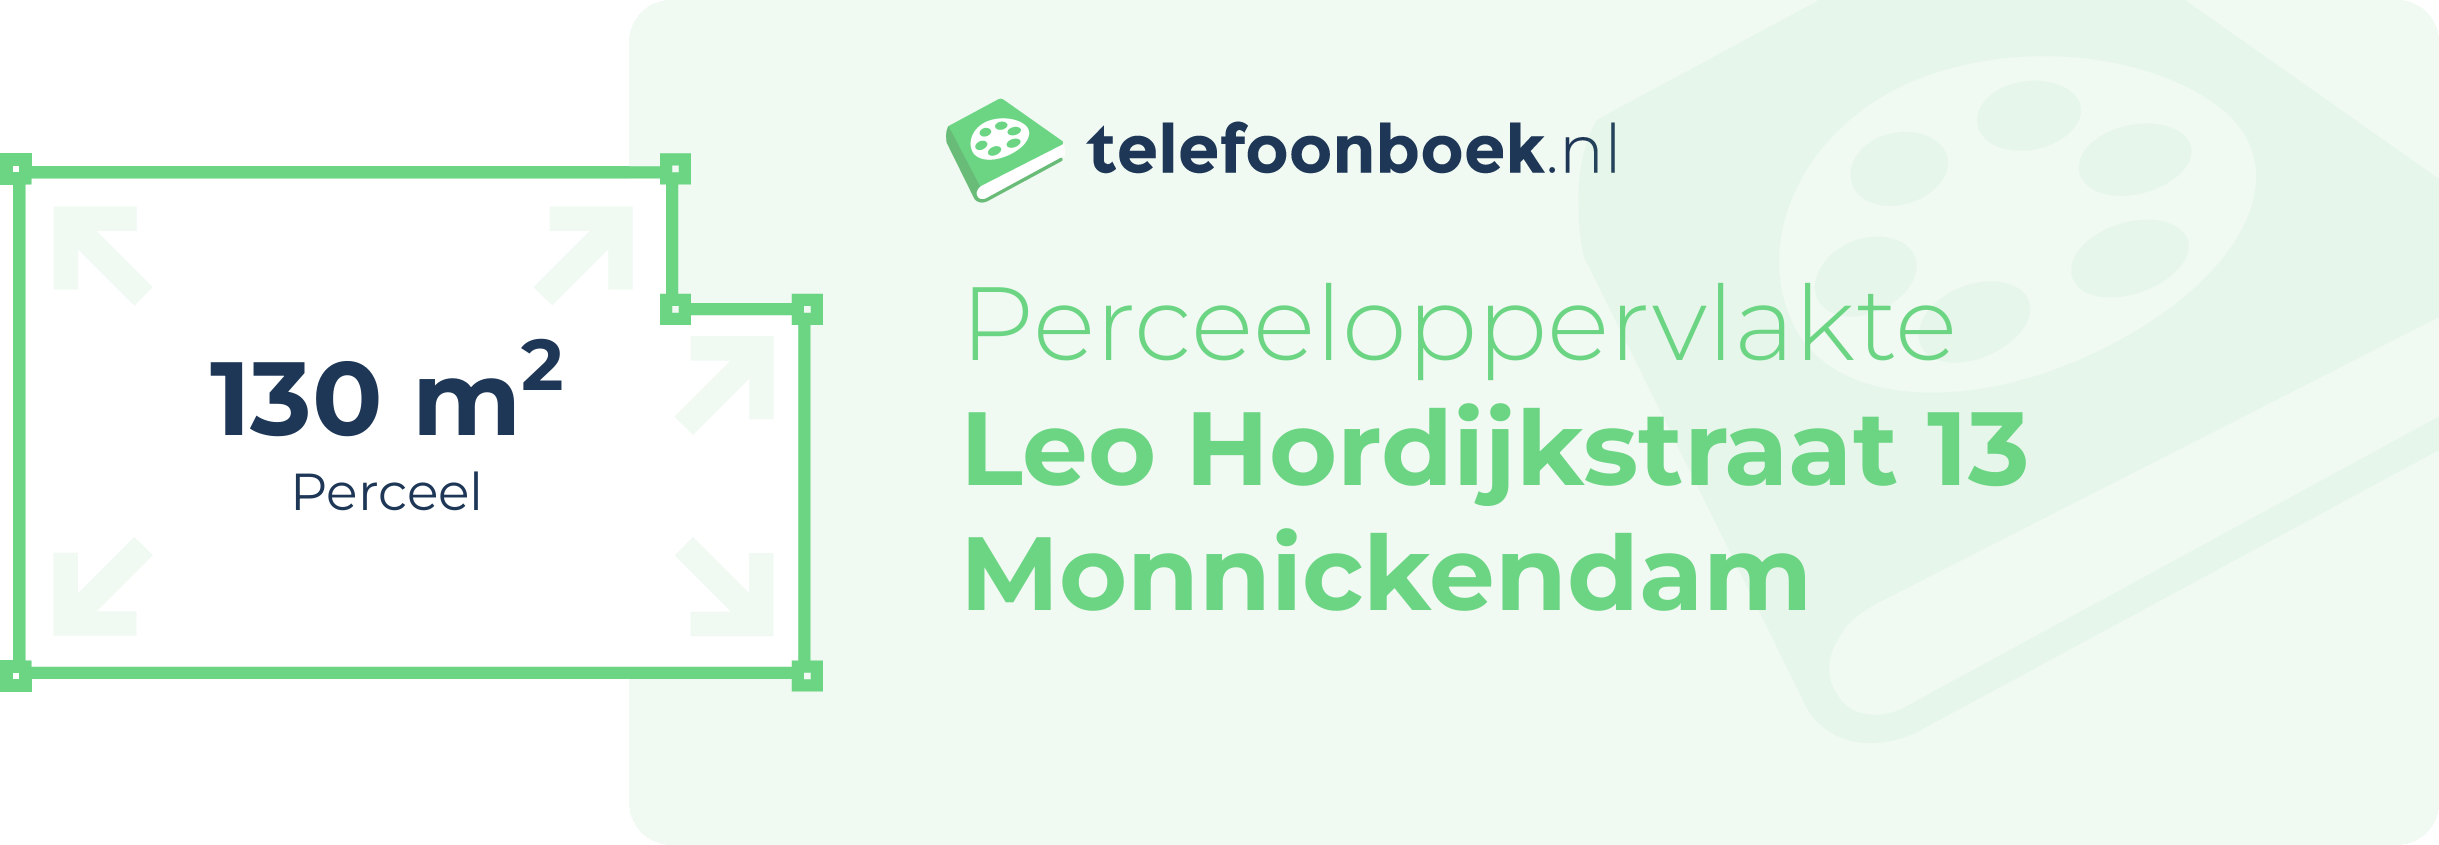 Perceeloppervlakte Leo Hordijkstraat 13 Monnickendam